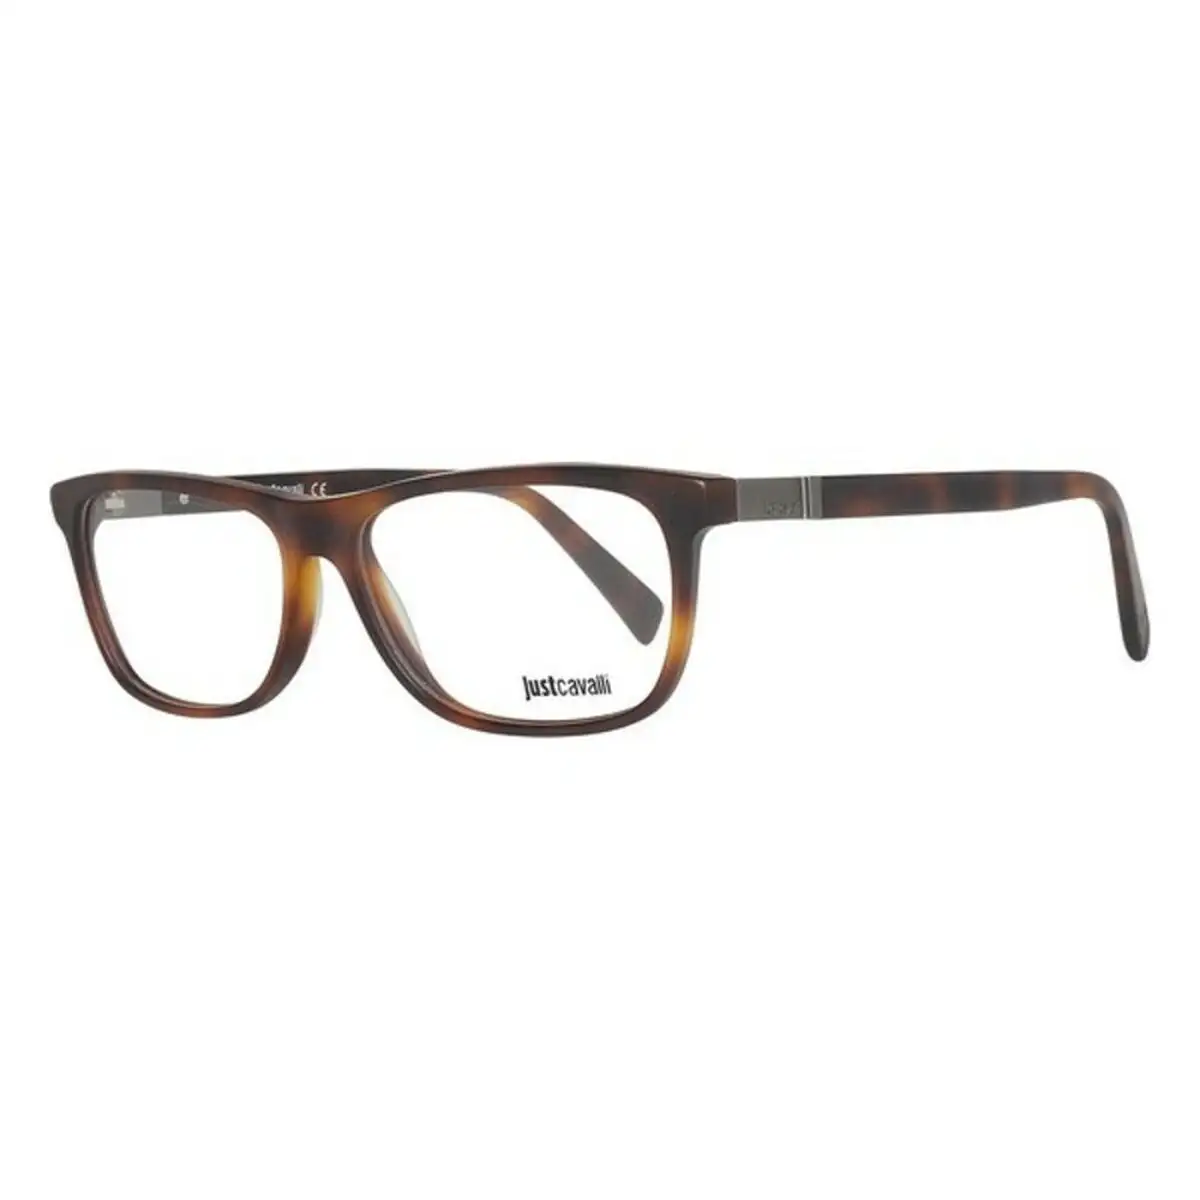 Monture de lunettes unisexe just cavalli jc0700 052 54 o 54 mm o 54 mm _6434. DIAYTAR SENEGAL - Votre Destination Shopping d'Exception. Parcourez nos rayons virtuels et choisissez des produits qui incarnent l'excellence et la diversité.